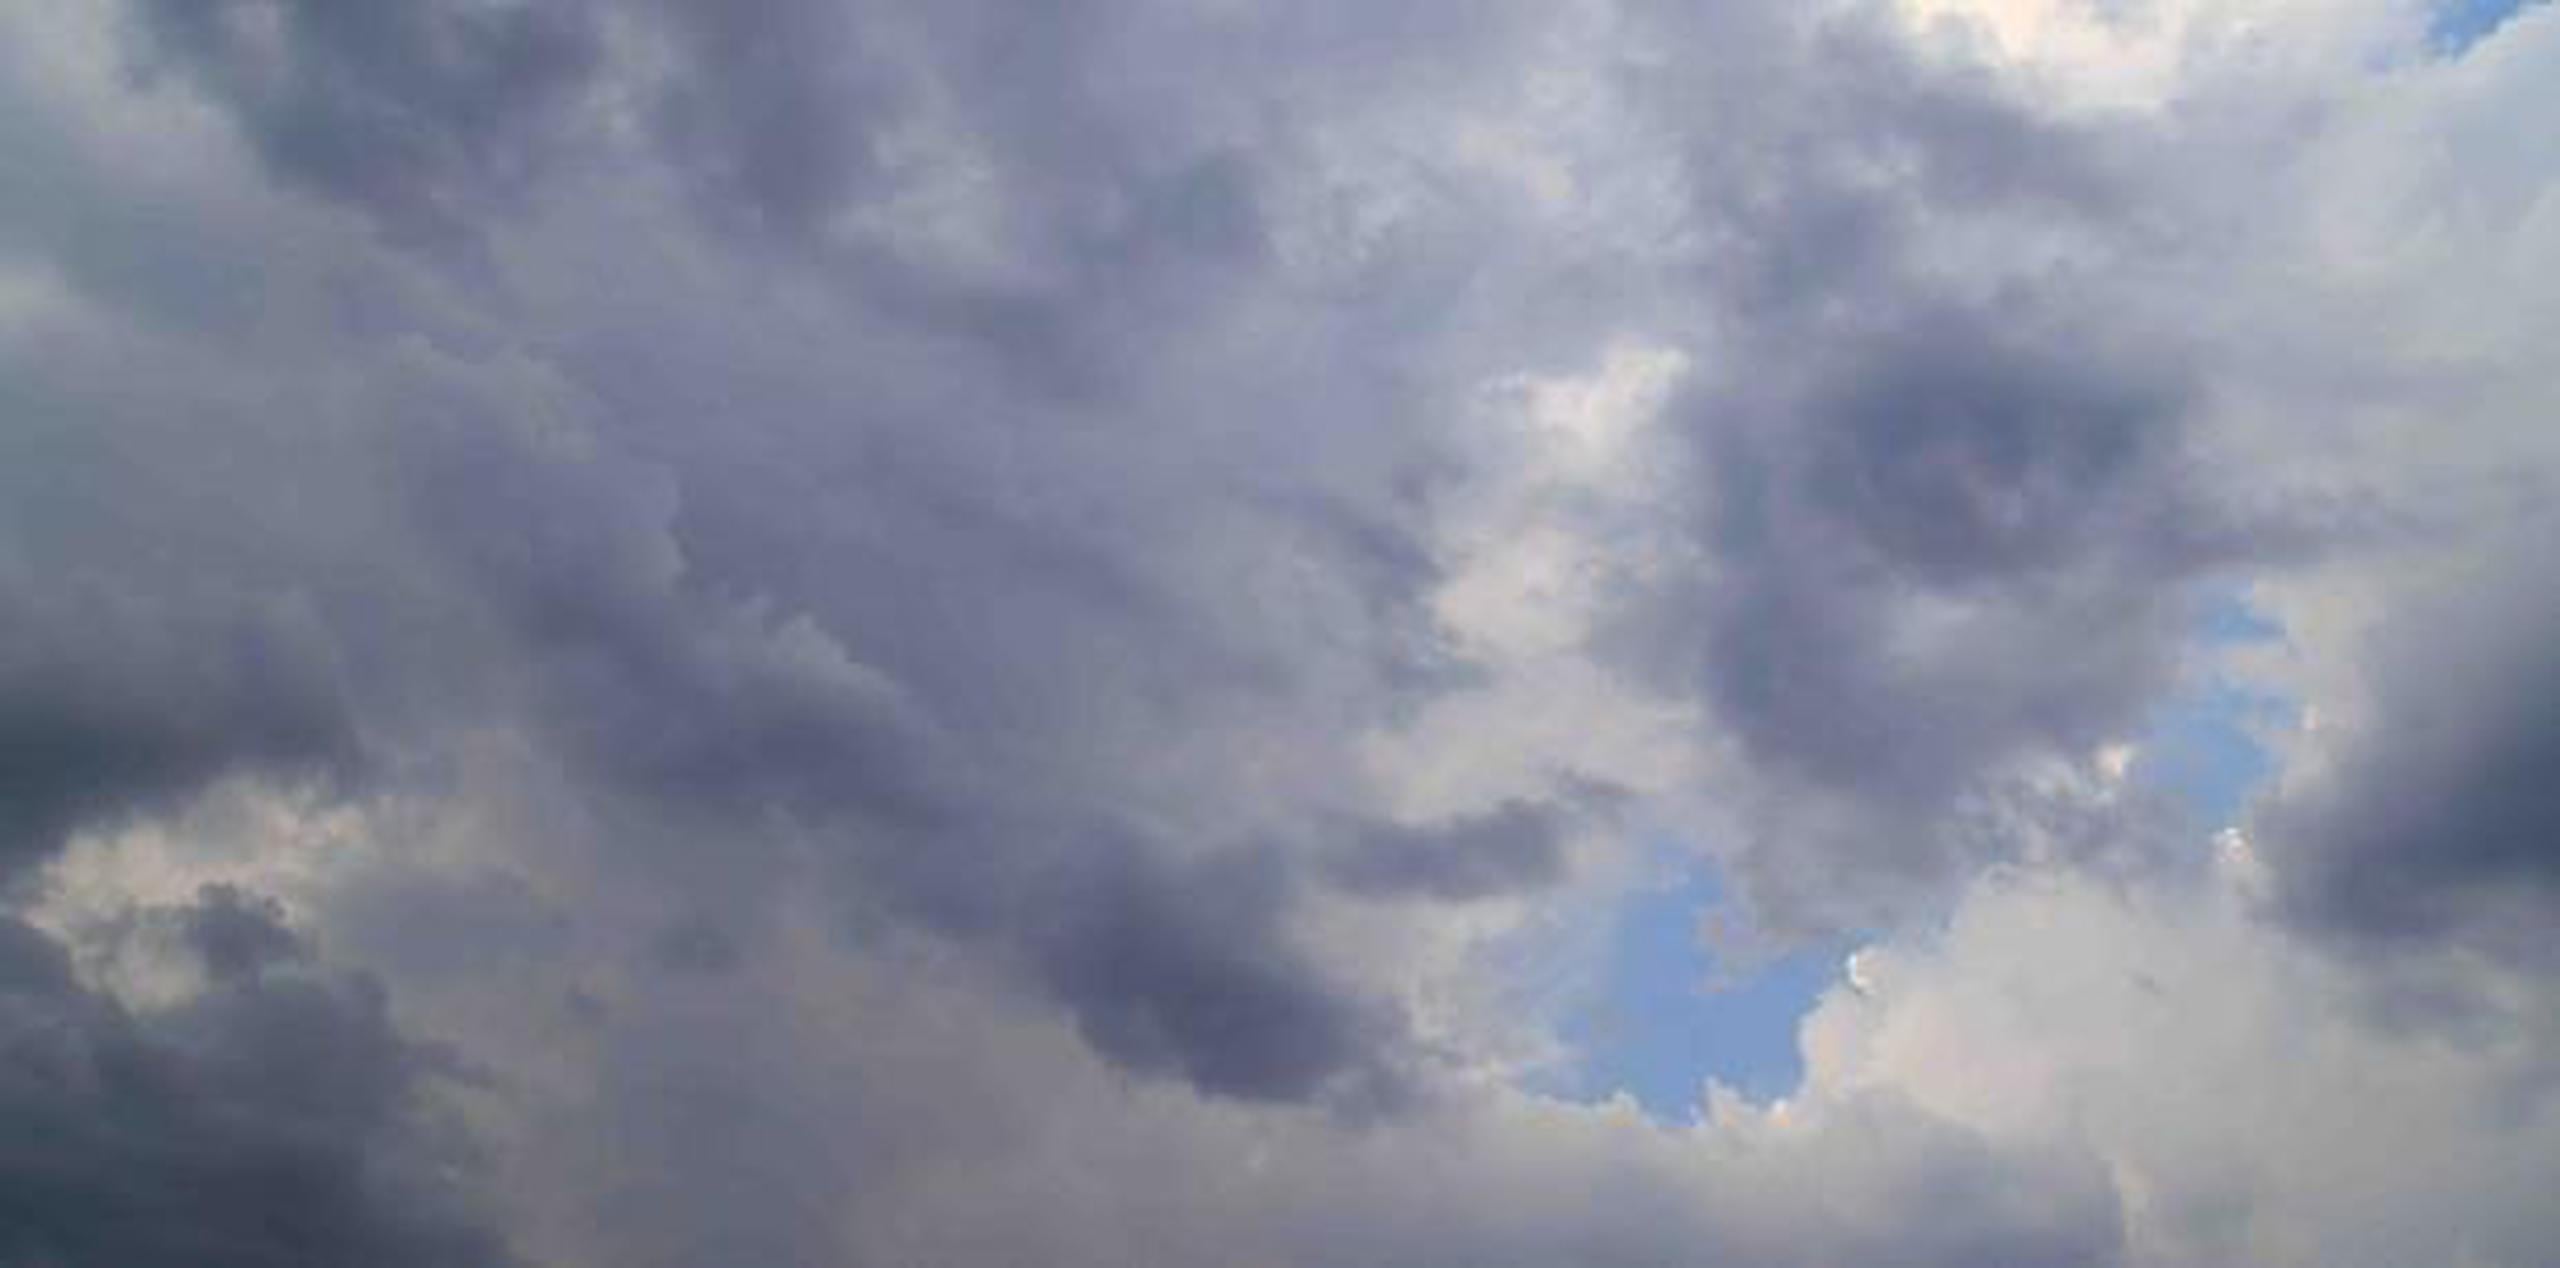 Para hoy, jueves, se espera que los cielos permanezcan variablemente nublados. (Shutterstock)